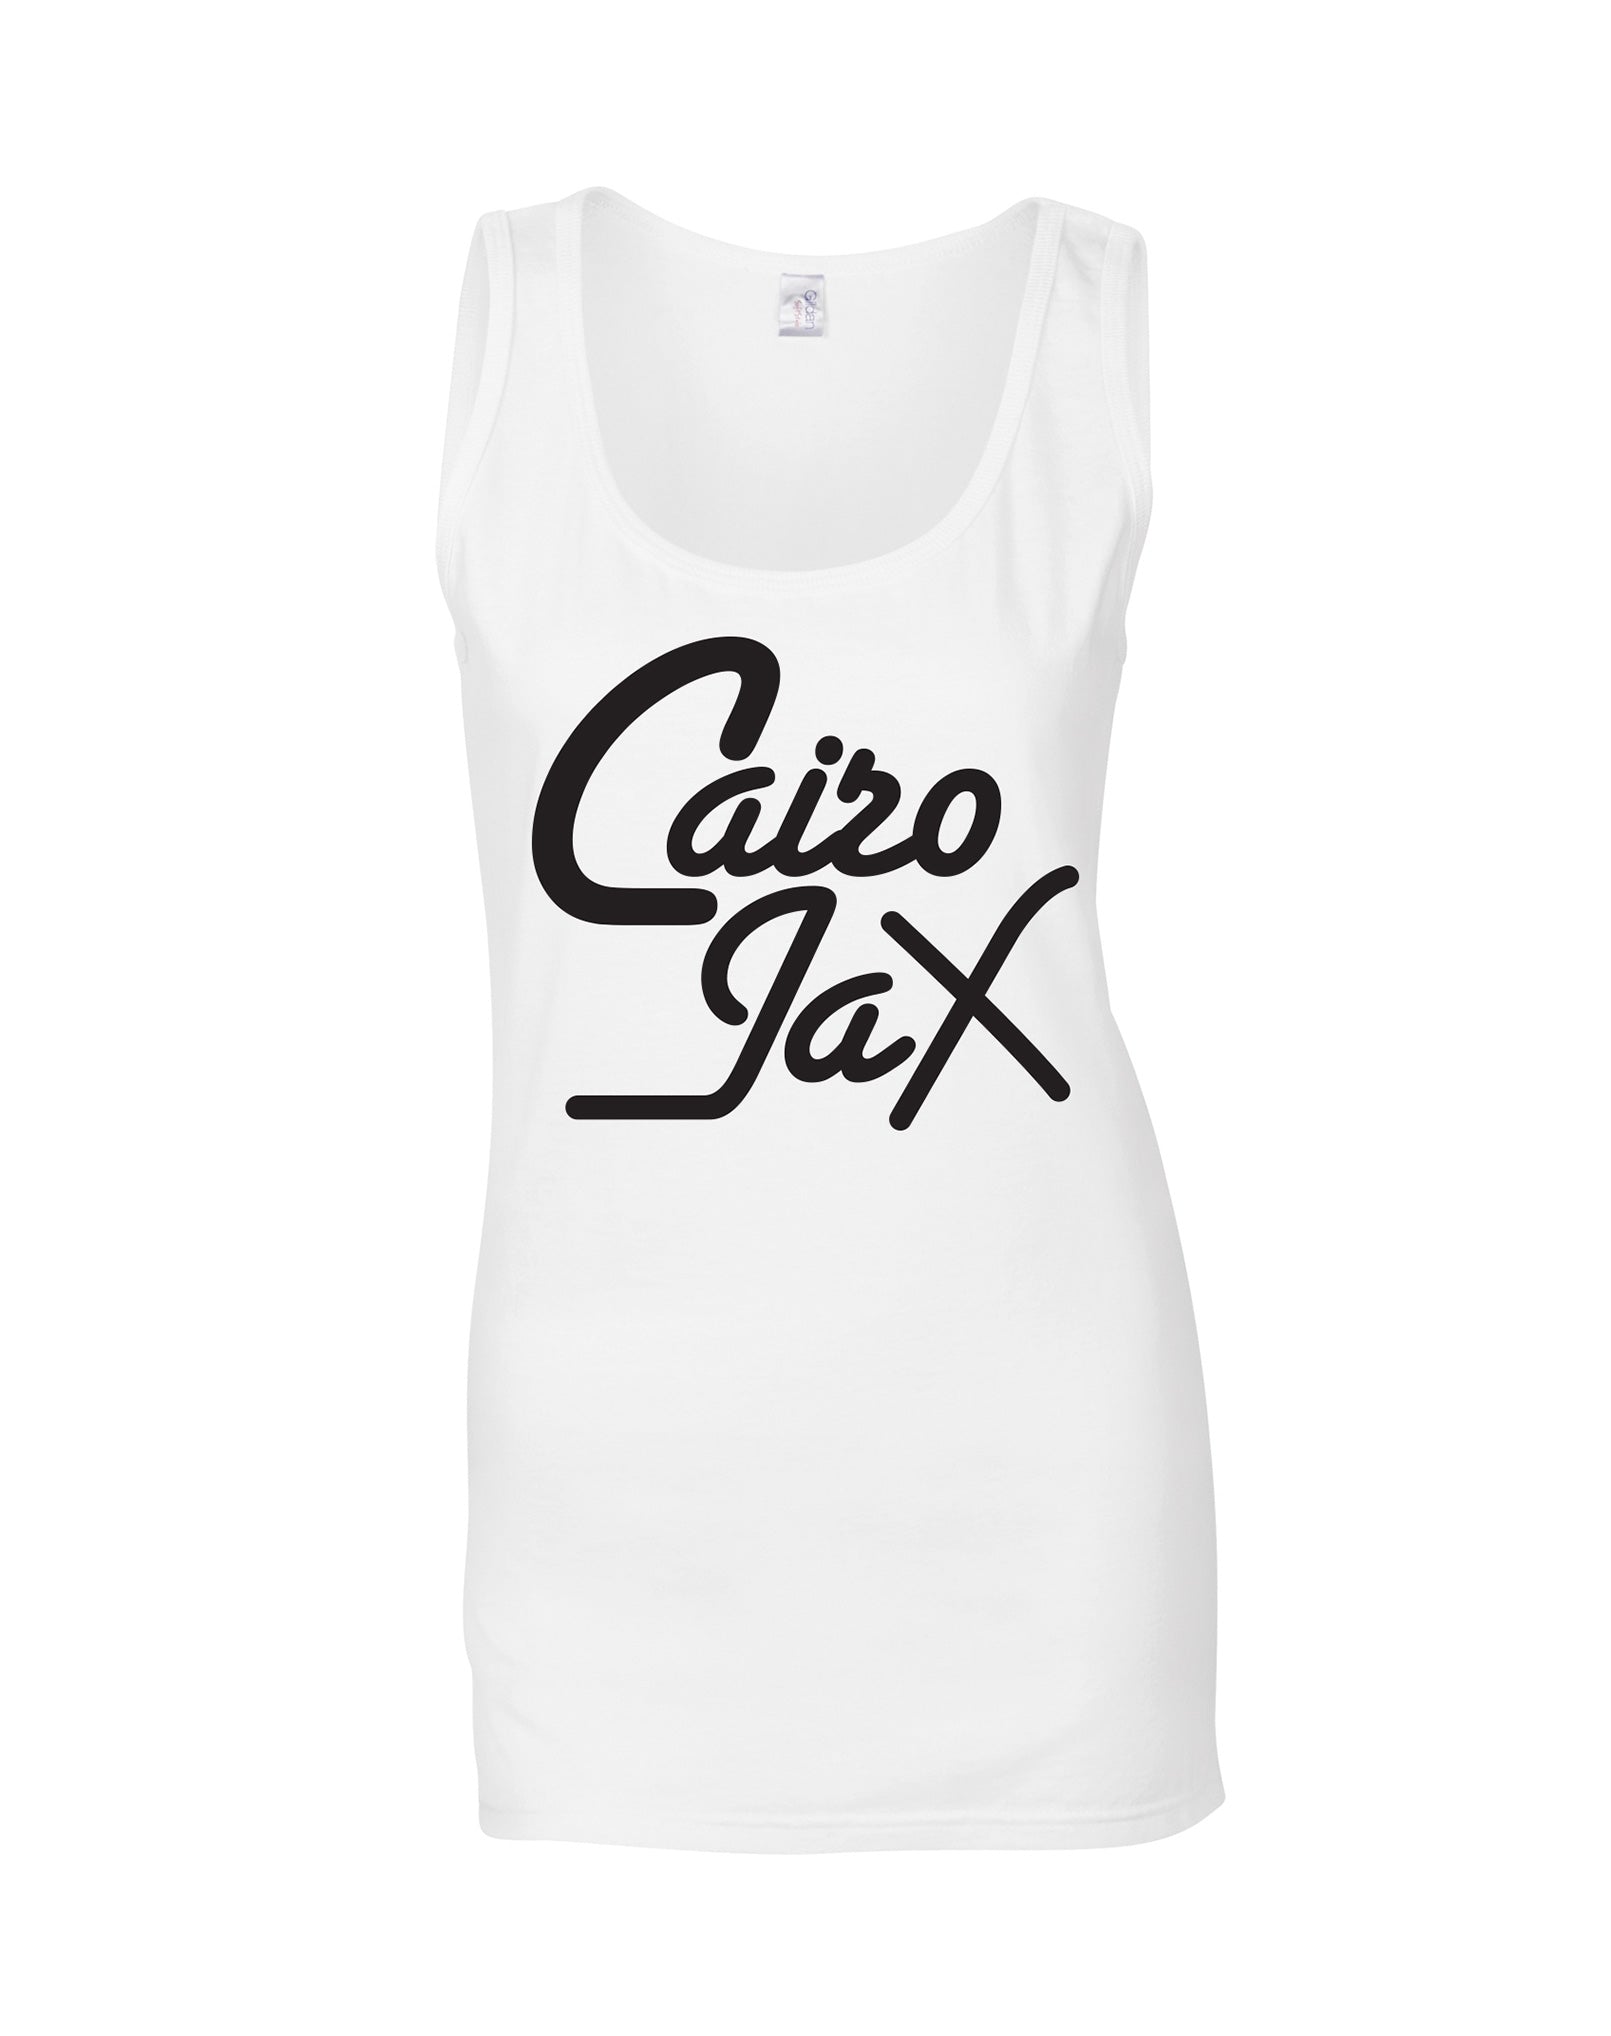 Cairo Jax ladies fit vest - various colours - Dirty Stop Outs